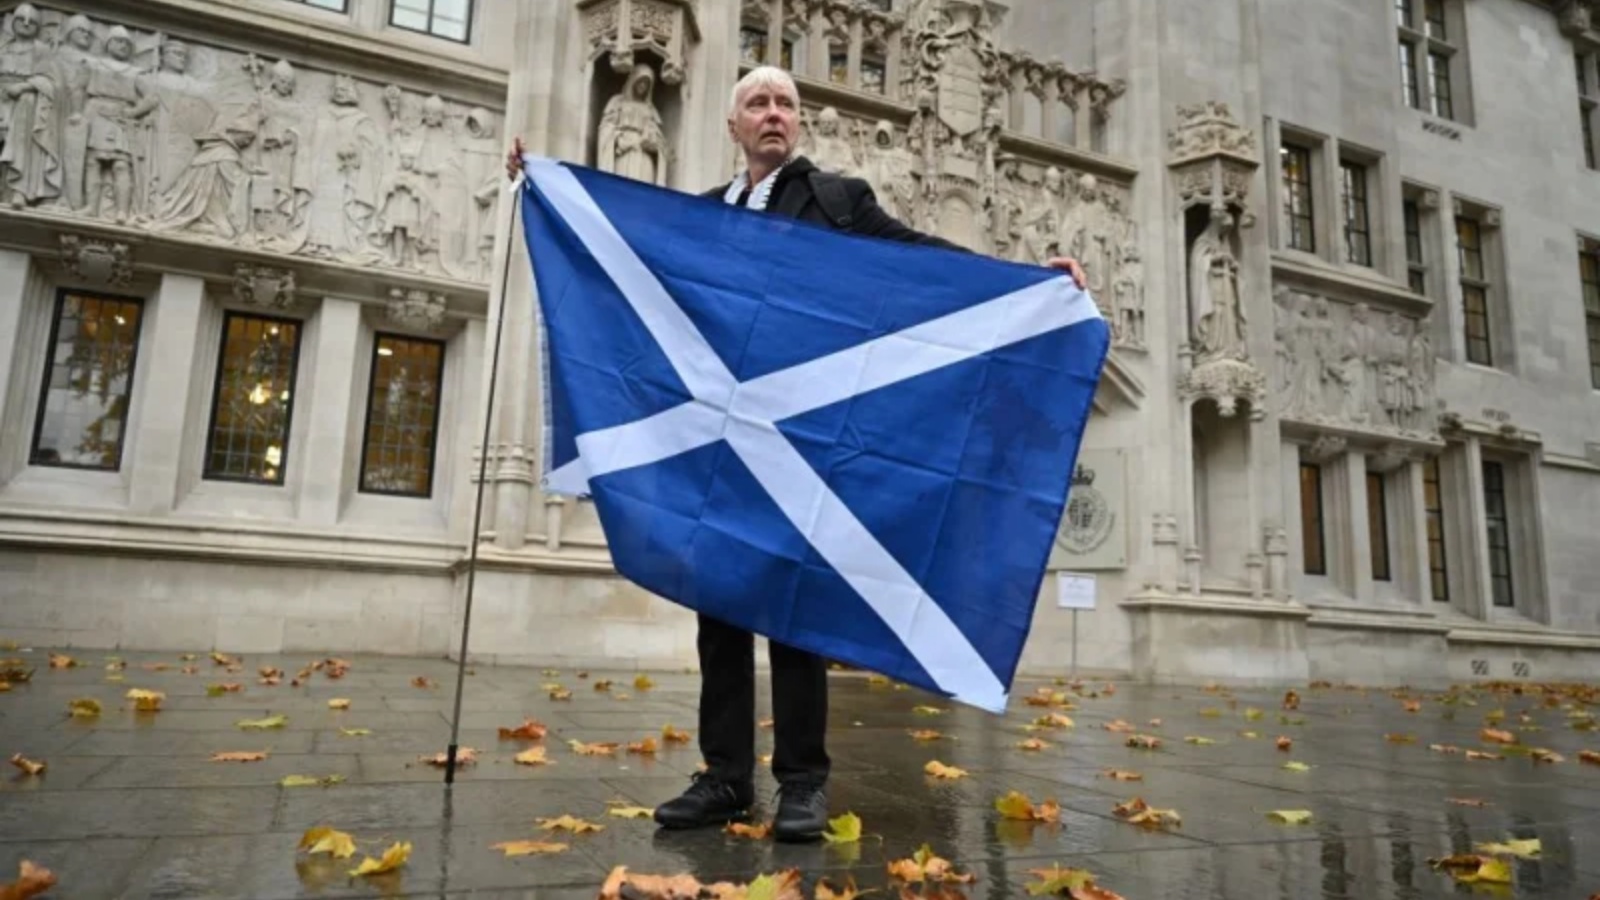 مؤيد استقلال اسكتلندي يقف مع علم اسكتلندا خارج المحكمة العليا في لندن في 23 نوفمبر 2022، بعد أن منعت المحكمة تصويتًا جديدًا على الاستقلال